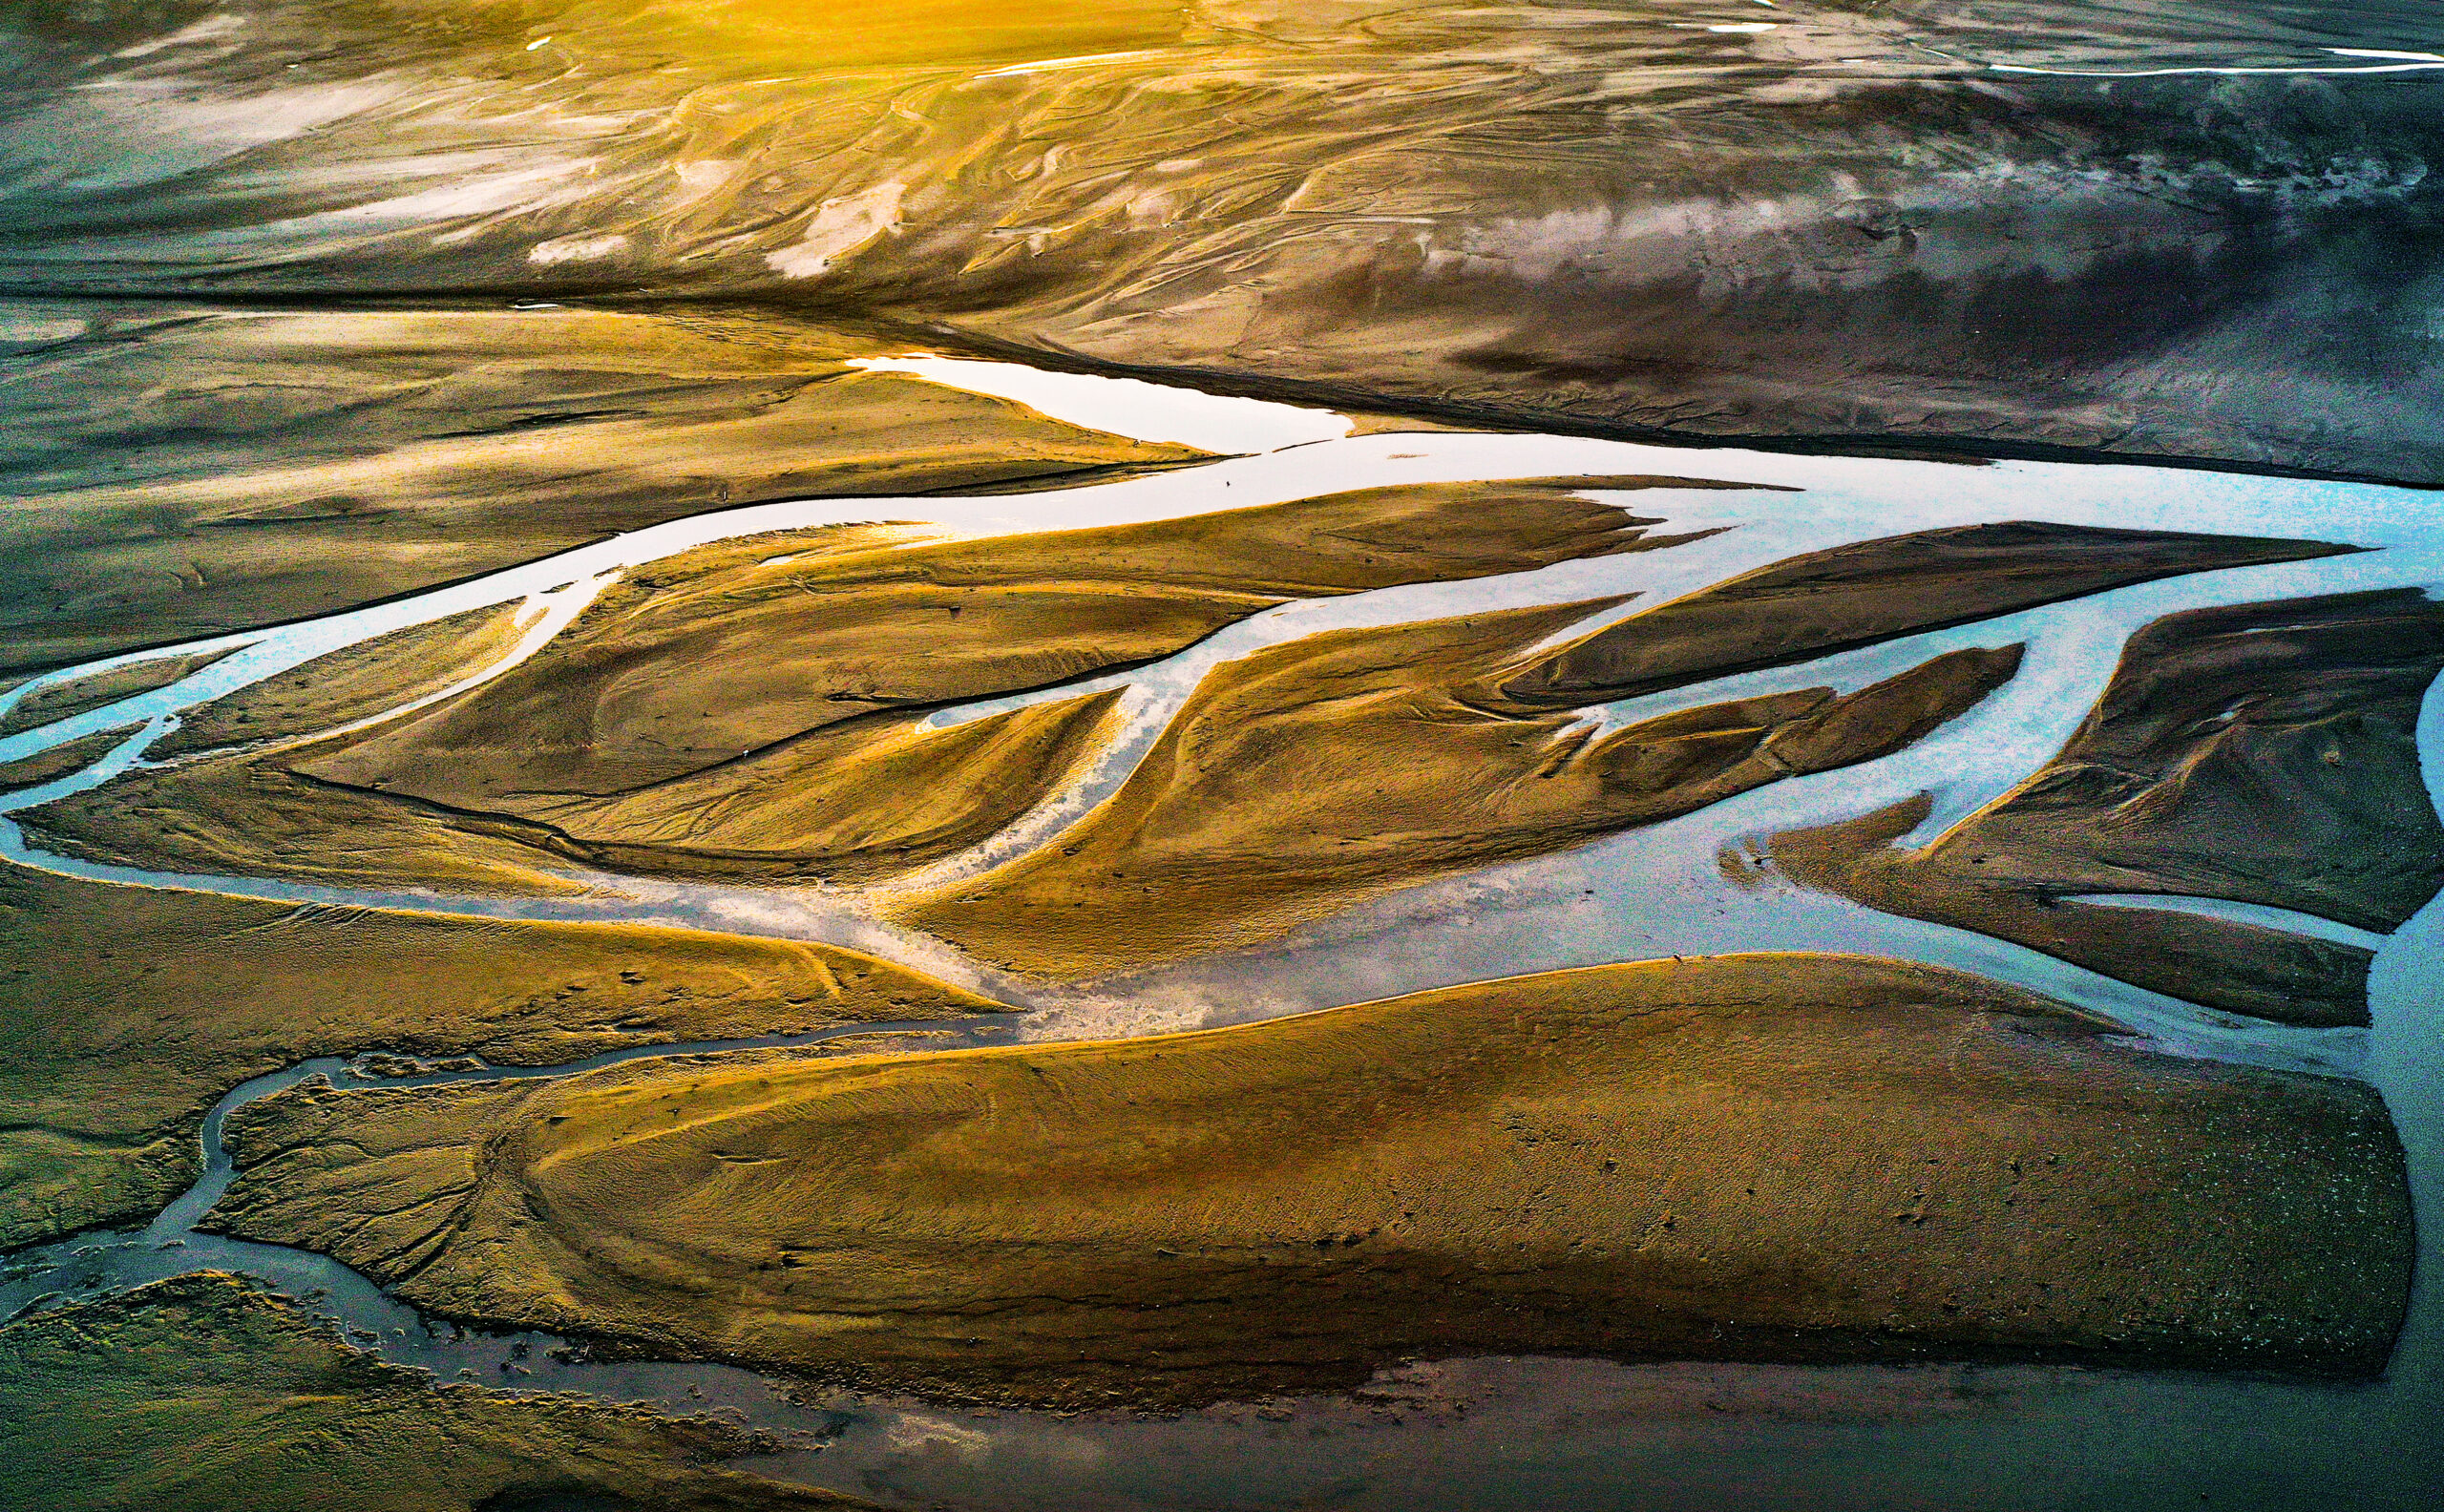 ลวดลาย-ก้อนน้ำแข็ง เหนือ 'แม่น้ำเหลือง' ในส่านซี